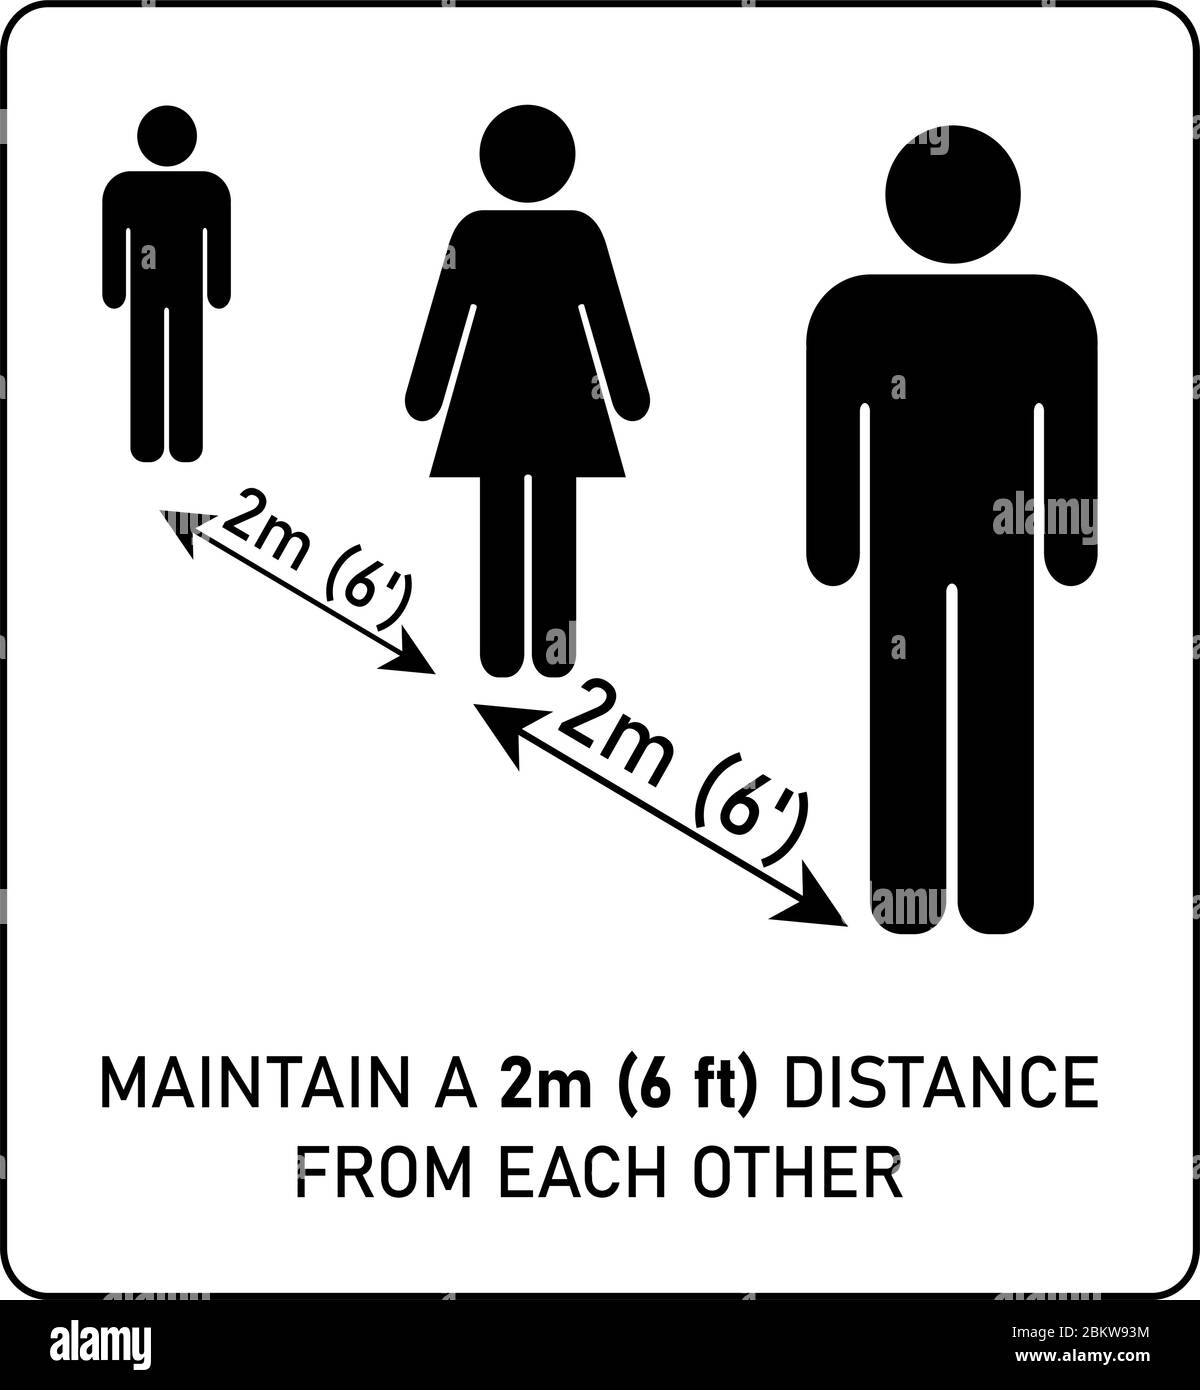 Signe de distance sociale. Silhouettes homme et femme simples debout dans la file d'attente à 2 m (6 pieds) l'un de l'autre. Coronavirus covid-19 info sur la prévention des épidémies Illustration de Vecteur